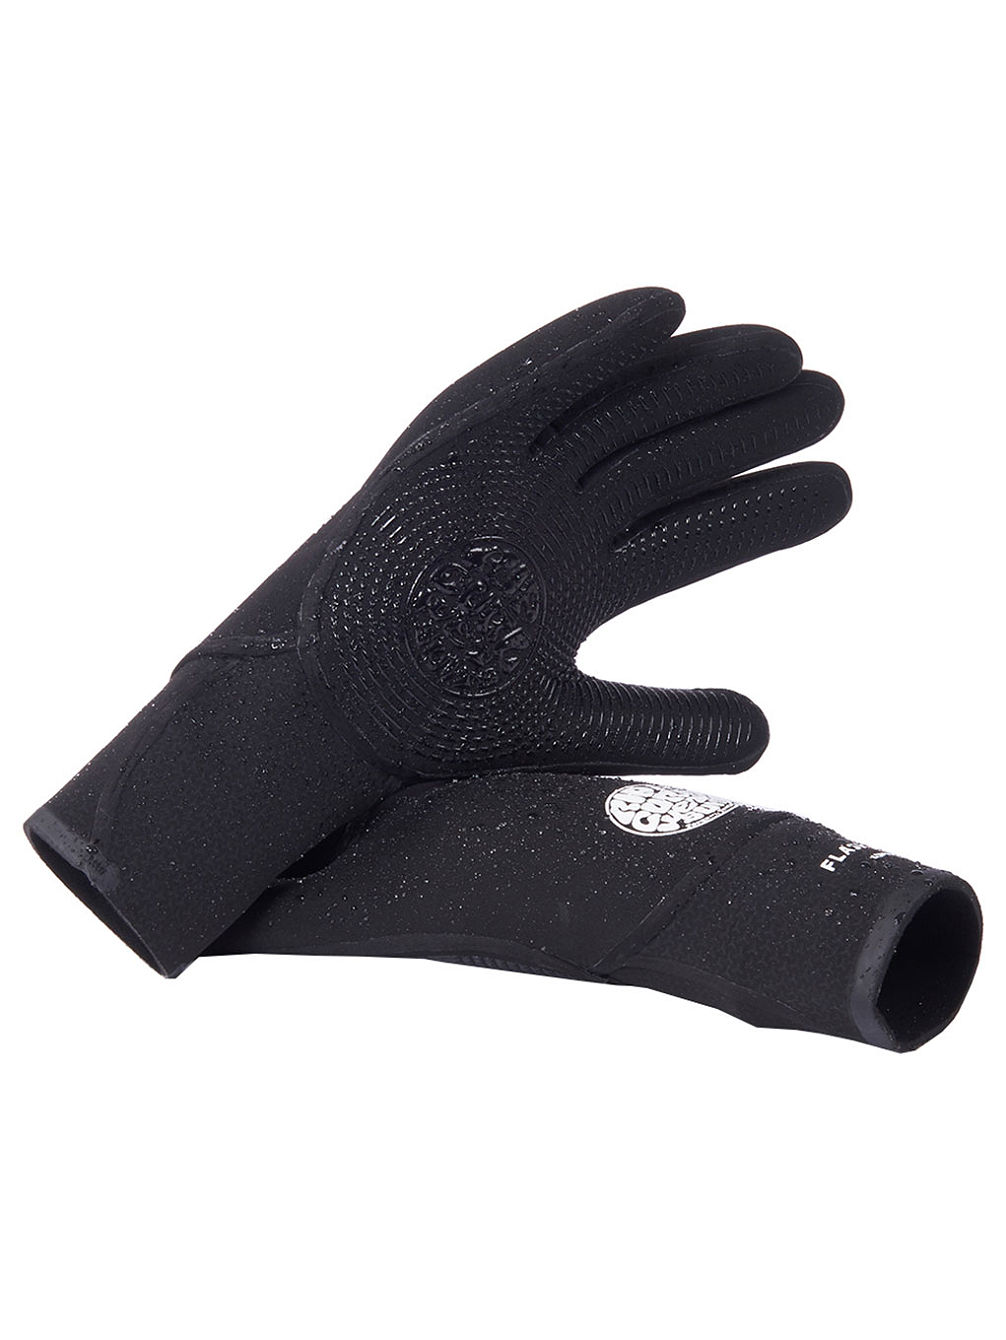 Flashbomb 3/2 5 Finger Gloves